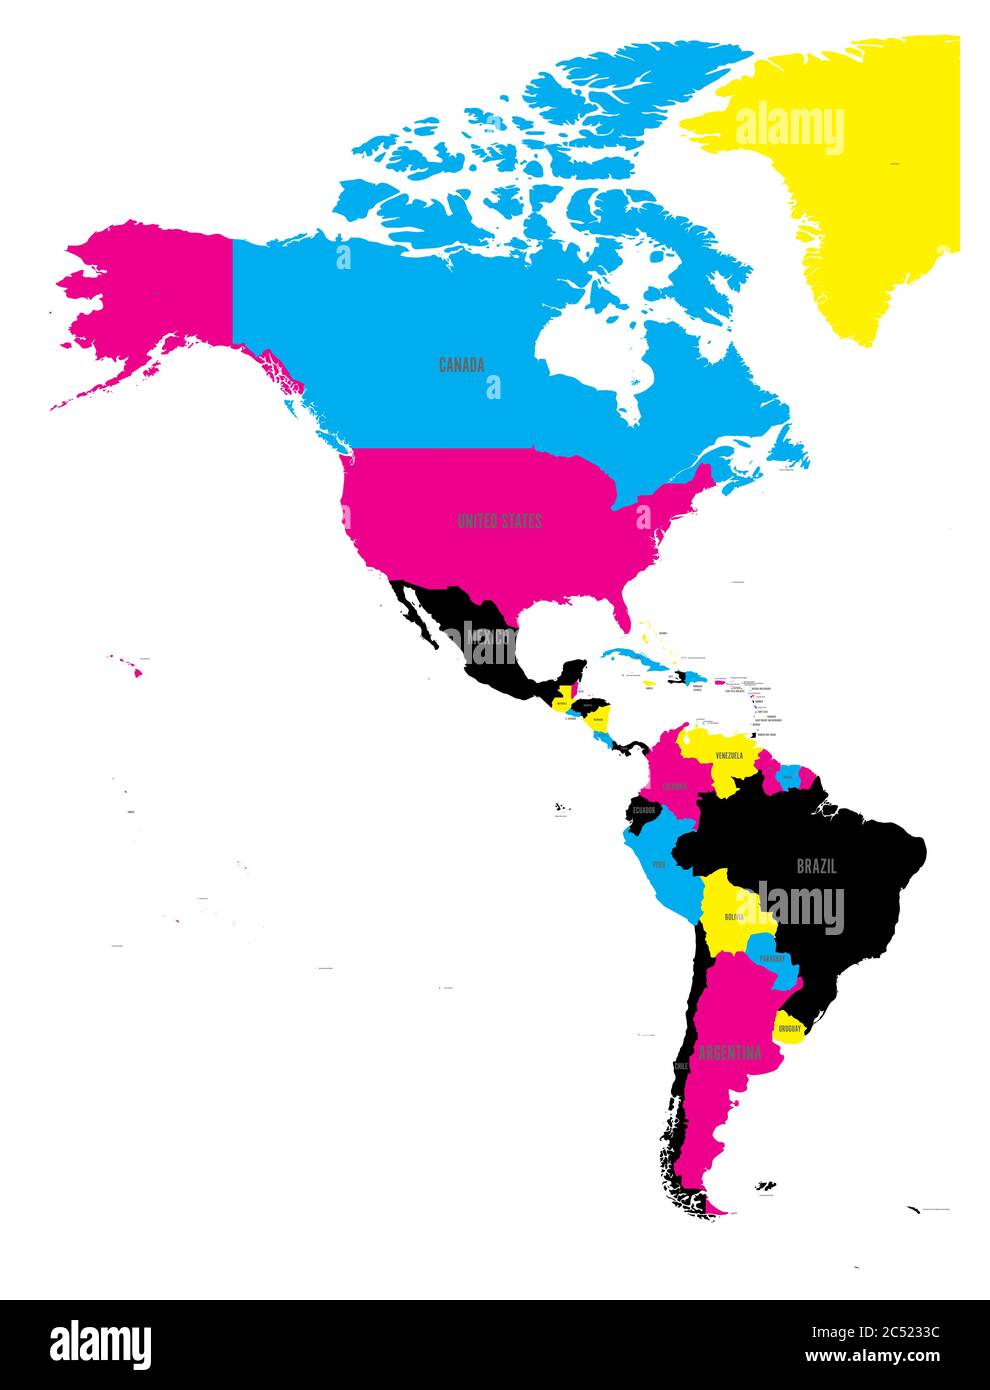 Politische Karte Amerikas in CMYK-Farben auf weißem Hintergrund. Nord- und Südamerika mit Länderkennzeichen. Einfache flache Vektordarstellung. Stock Vektor